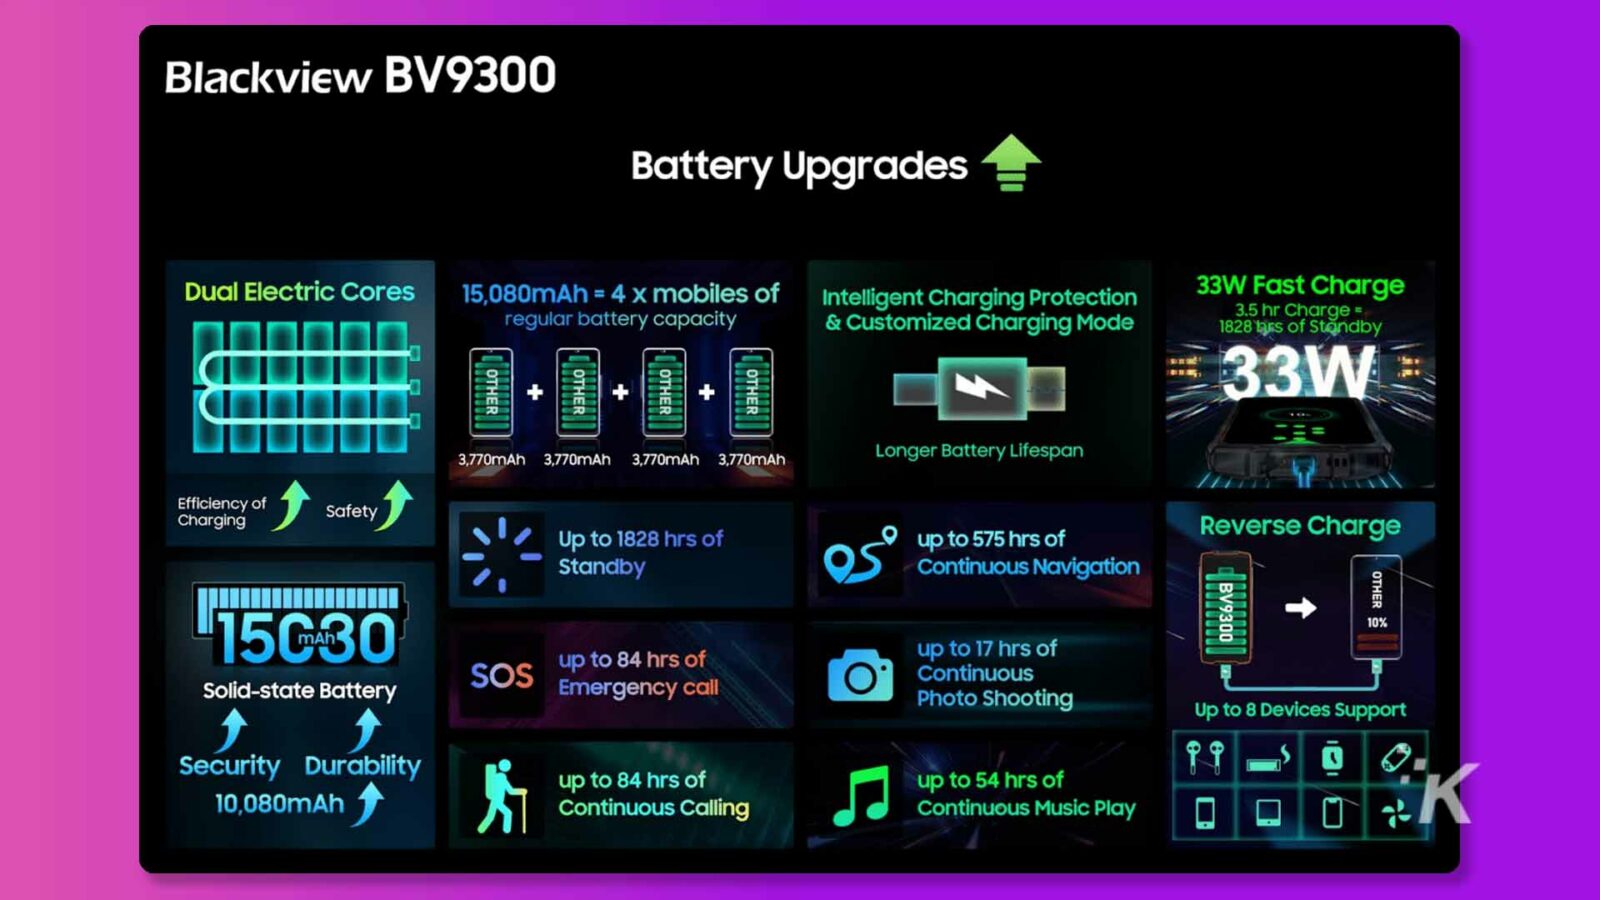 Gambar ini menunjukkan fitur dan keunggulan baterai Blackview BV9300, yang memiliki kapasitas 15.080mAh dan pengisian cepat 33W dengan mode pengisian daya yang disesuaikan, memberikan masa pakai baterai yang lebih lama, pengisian daya yang efisien, dan siaga hingga 1828 jam. Teks Lengkap: Blackview BV9300 Peningkatan Baterai Dual Electric Cores 15.080mAh = 4 x ponsel dengan Intelligent Charging Protection 33W Pengisian Cepat kapasitas baterai reguler & Mode Pengisian Daya Disesuaikan Pengisian Daya 3,5 jam = 1828 ban Siaga 33W LAIN LAIN LAIN LAIN LAINNYA + + + MA 3.770mAh 3.770 mAh 3.770mAh 3.770mAh Umur Baterai Lebih Lama Efisiensi Keamanan Pengisian Daya Hingga 1828 jam Pengisian Balik hingga 575 jam Siaga Navigasi Berkelanjutan LAINNYA BV9300 15G30 hingga 84 jam Baterai Solid-state SOS hingga 17 jam panggilan Darurat O Foto Berkelanjutan Memotret Hingga 8 Perangkat Mendukung Keamanan Daya Tahan 10.080mAh hingga 84 jam hingga 54 jam Panggilan Terus Menerus Pemutaran Musik Terus Menerus